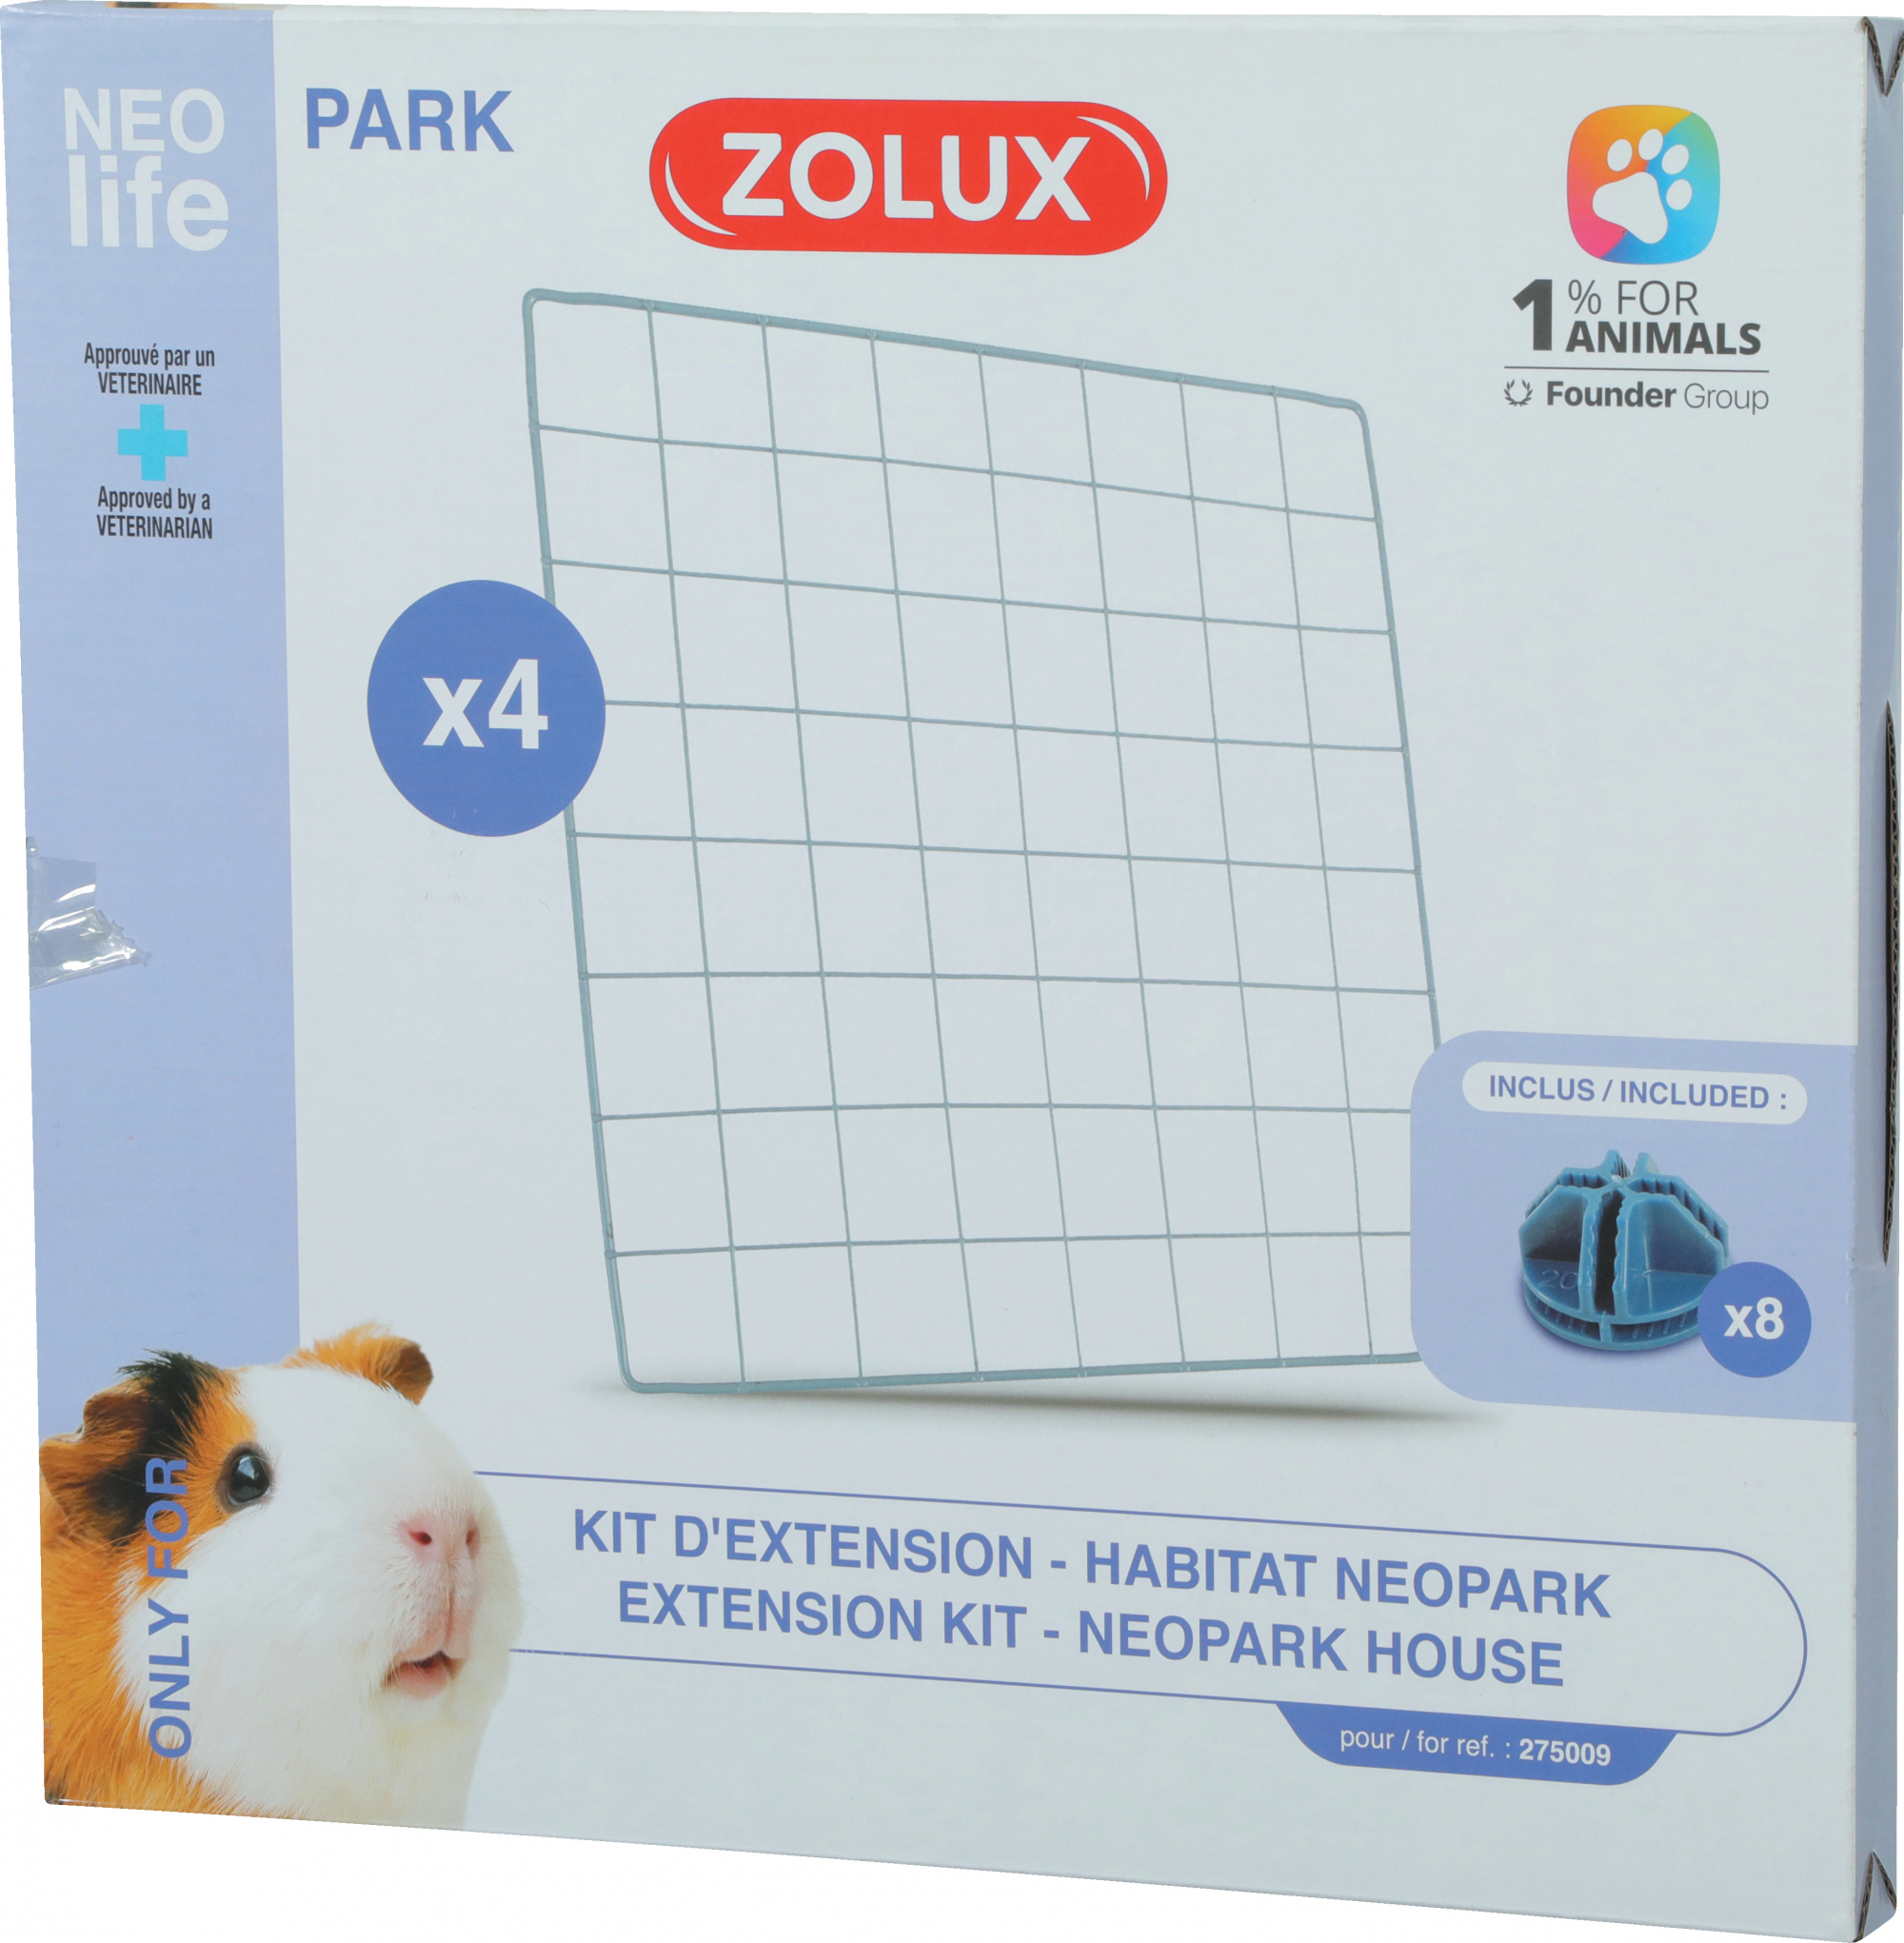 Kit de ampliación del recinto modular Zolux NEOLIFE Park para cobayas